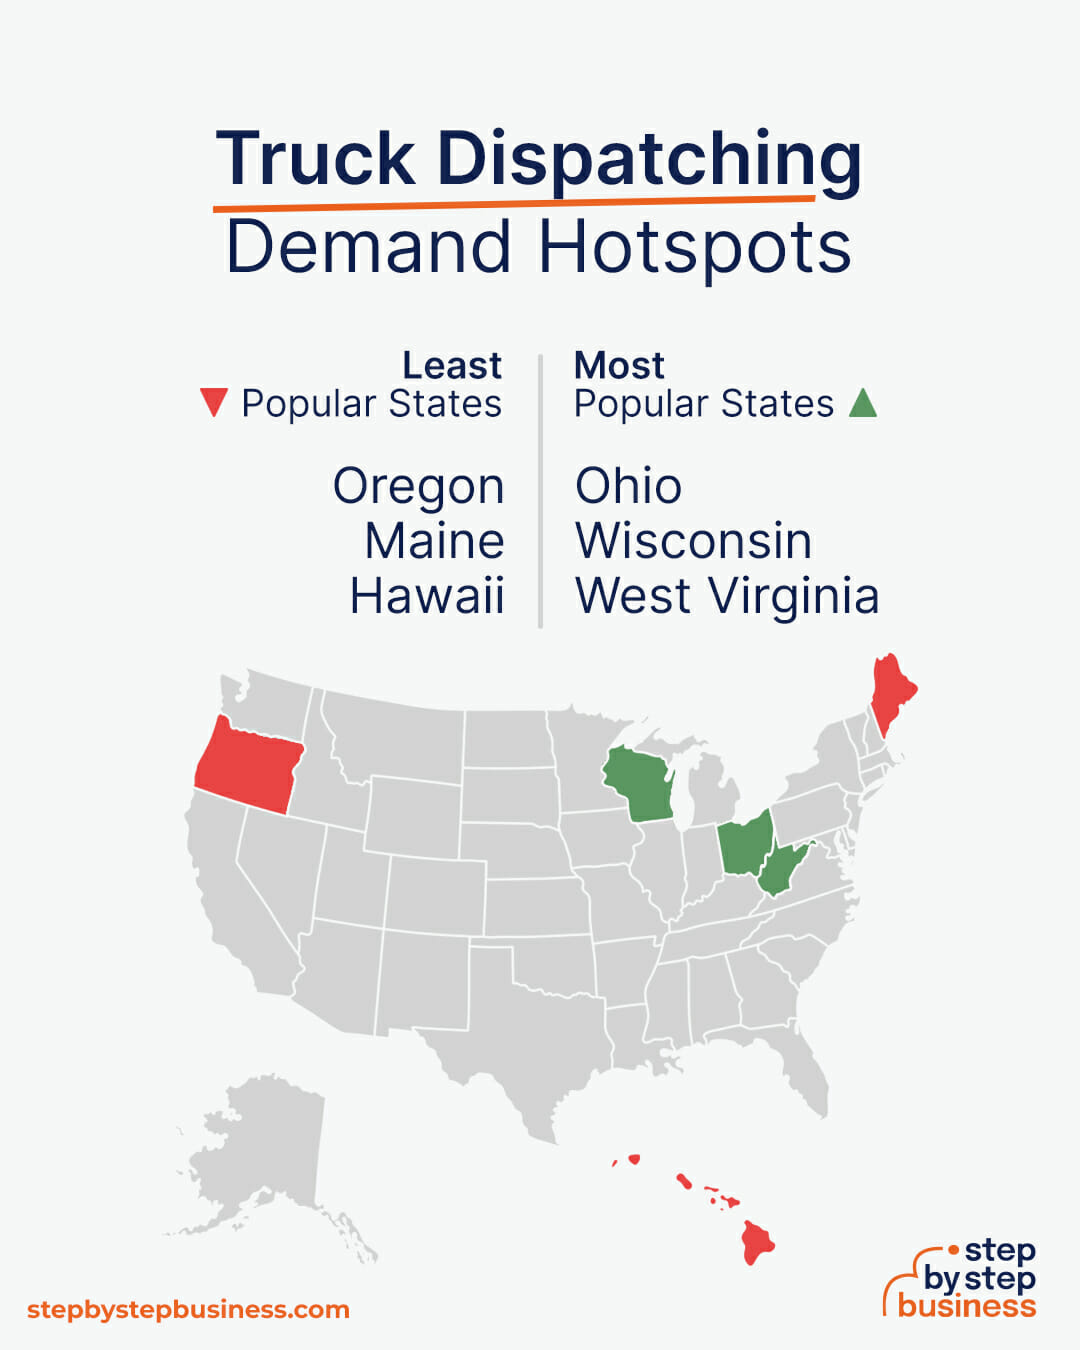 Truck Dispatching demand hotspots